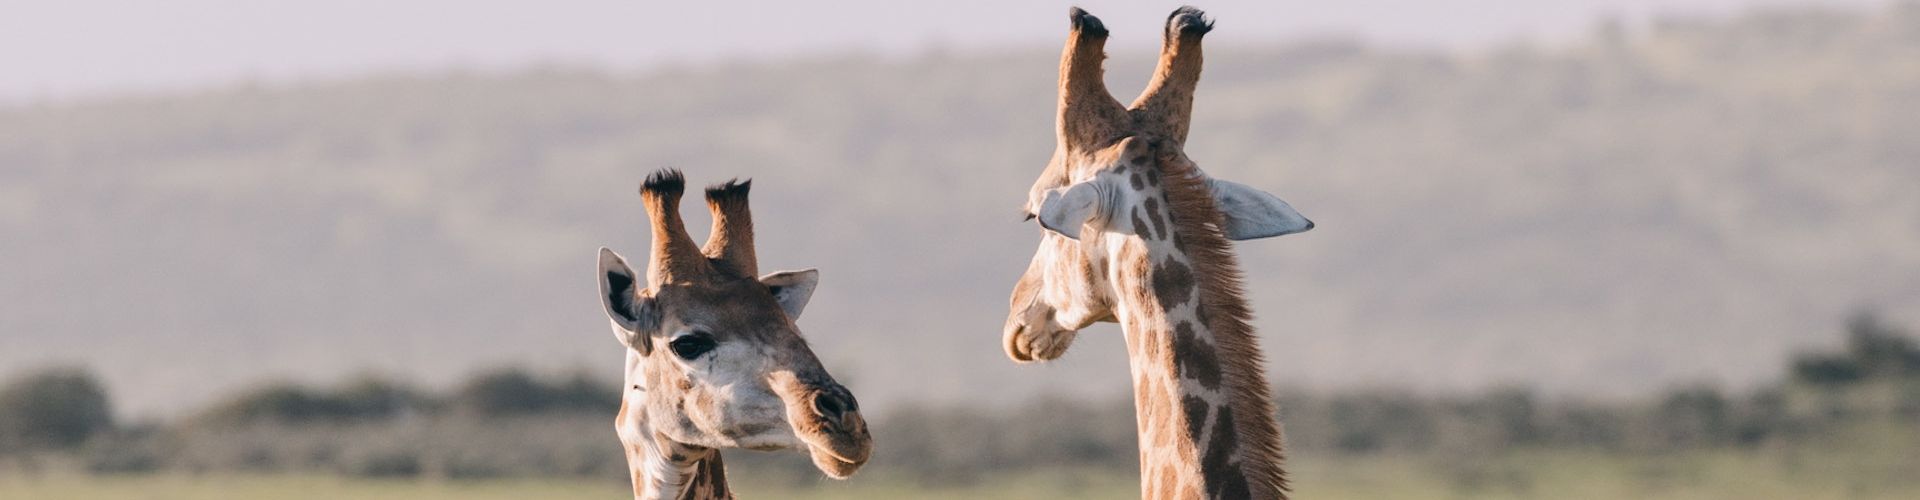 Deux girafes en pleine conversation